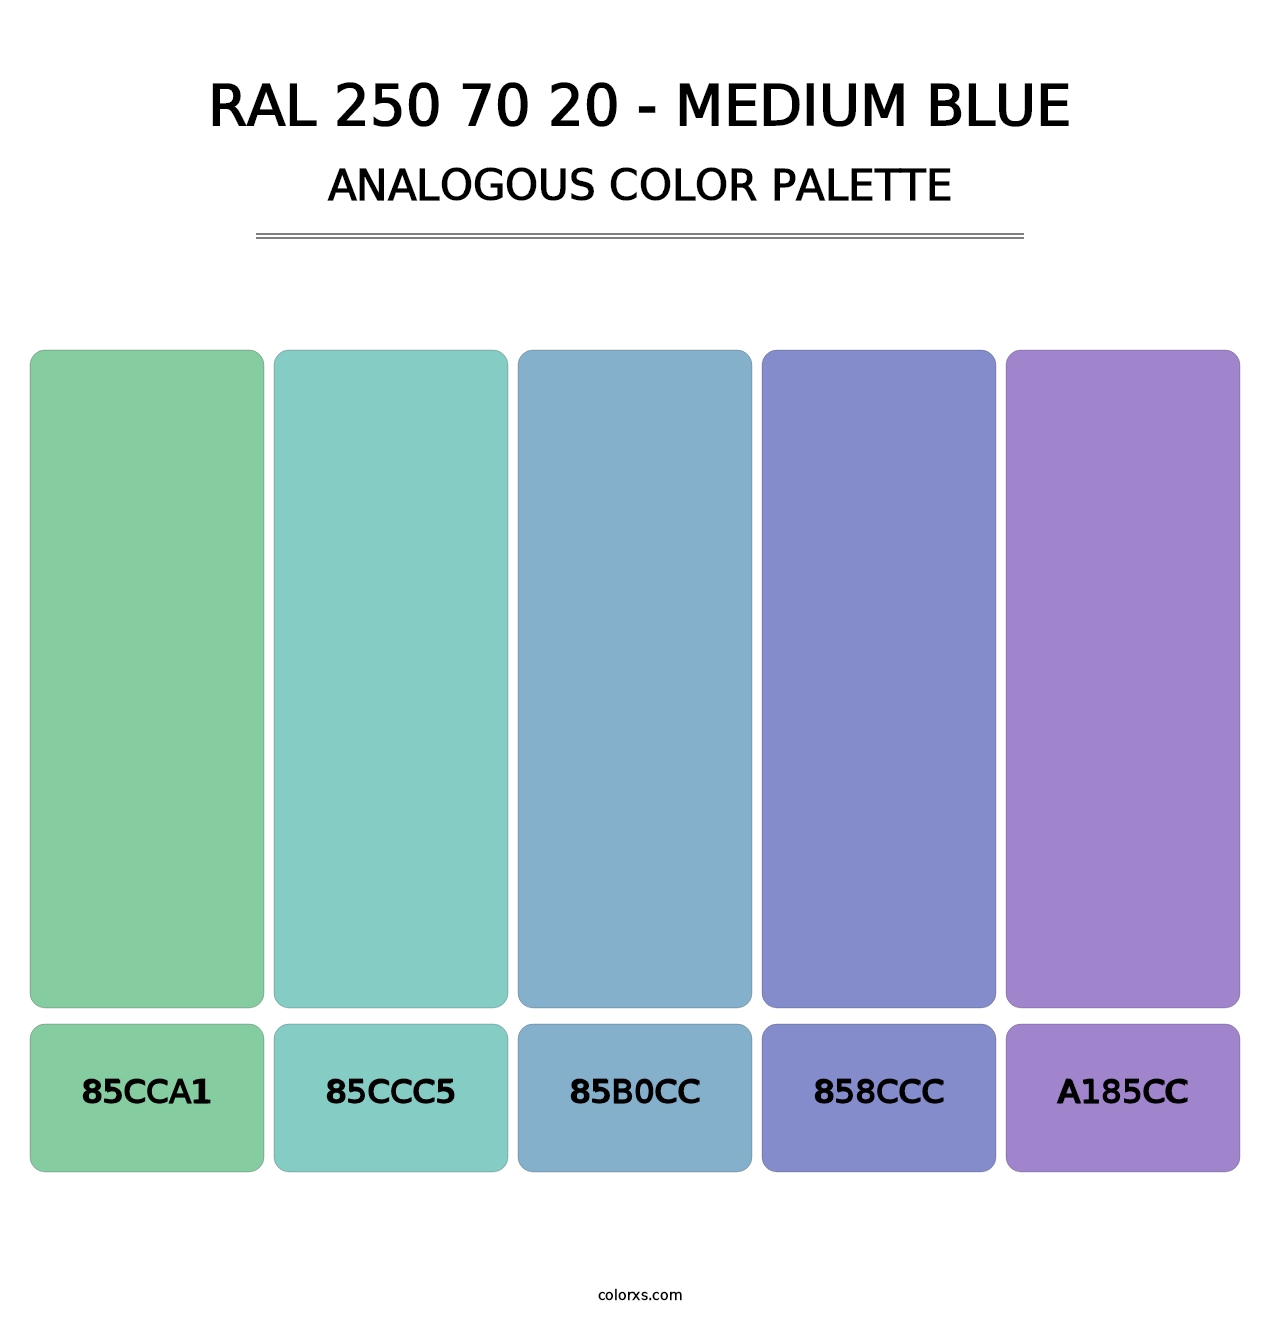 RAL 250 70 20 - Medium Blue - Analogous Color Palette